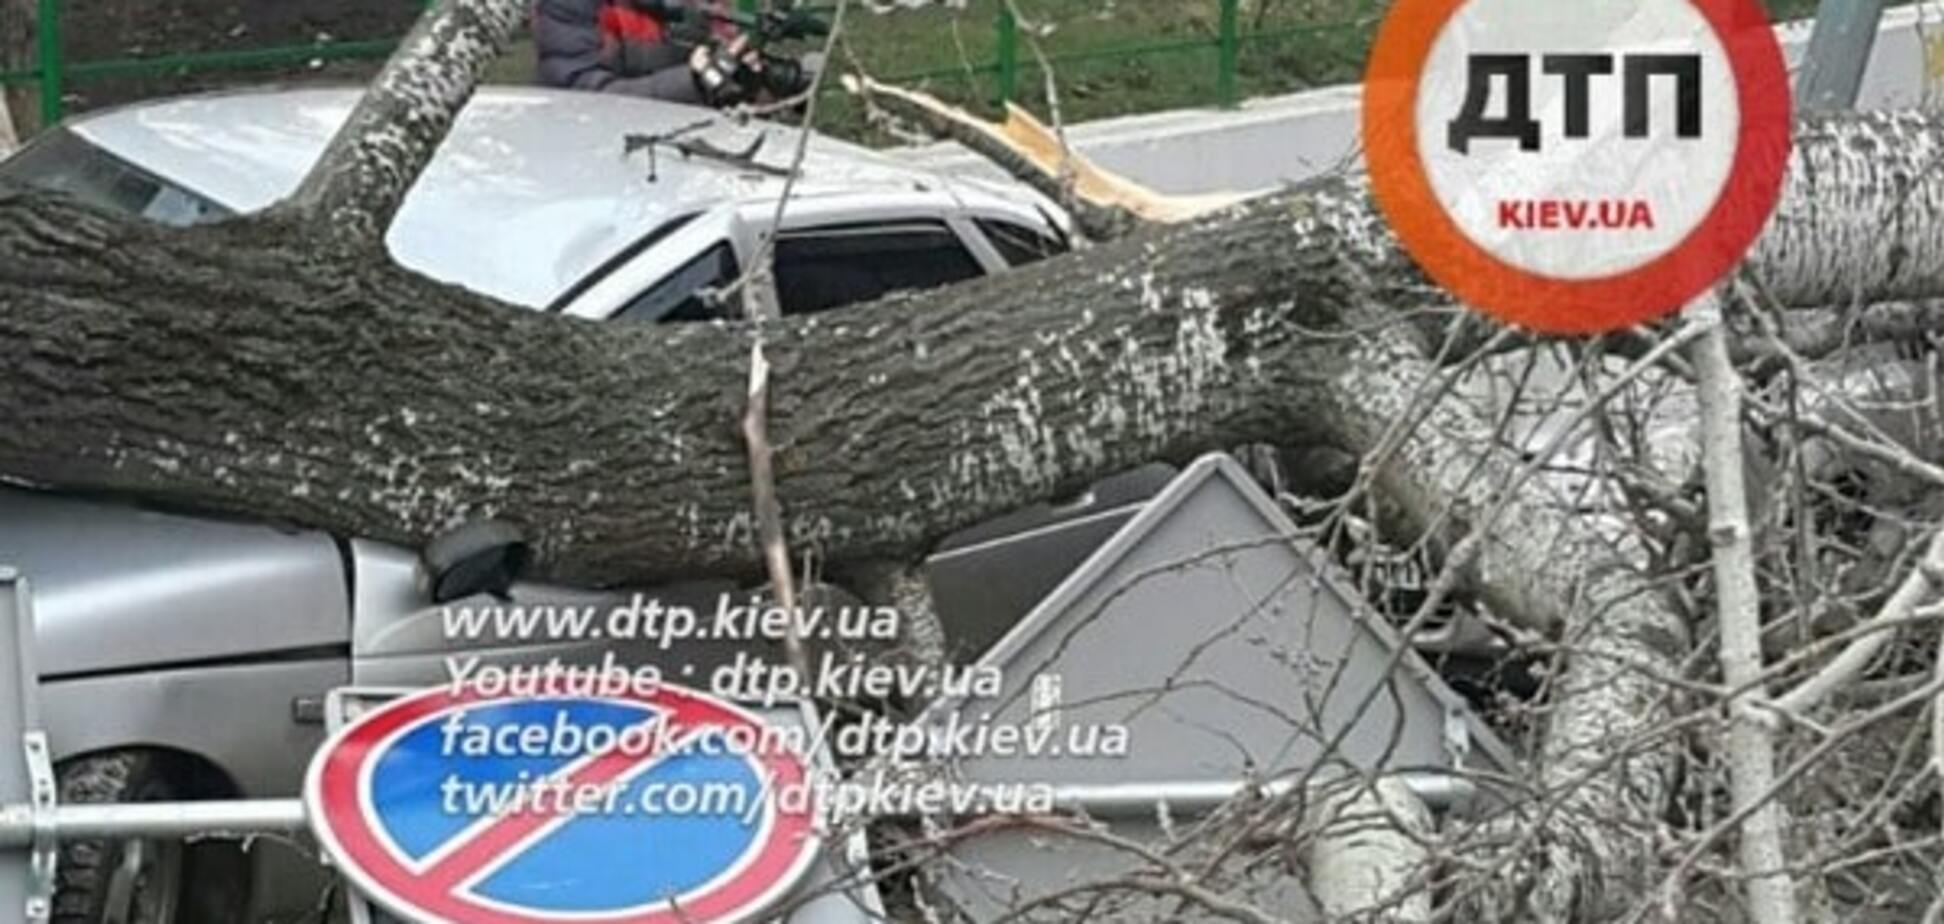 Божья кара: в Киеве дерево рухнуло на машины 'героев парковки'